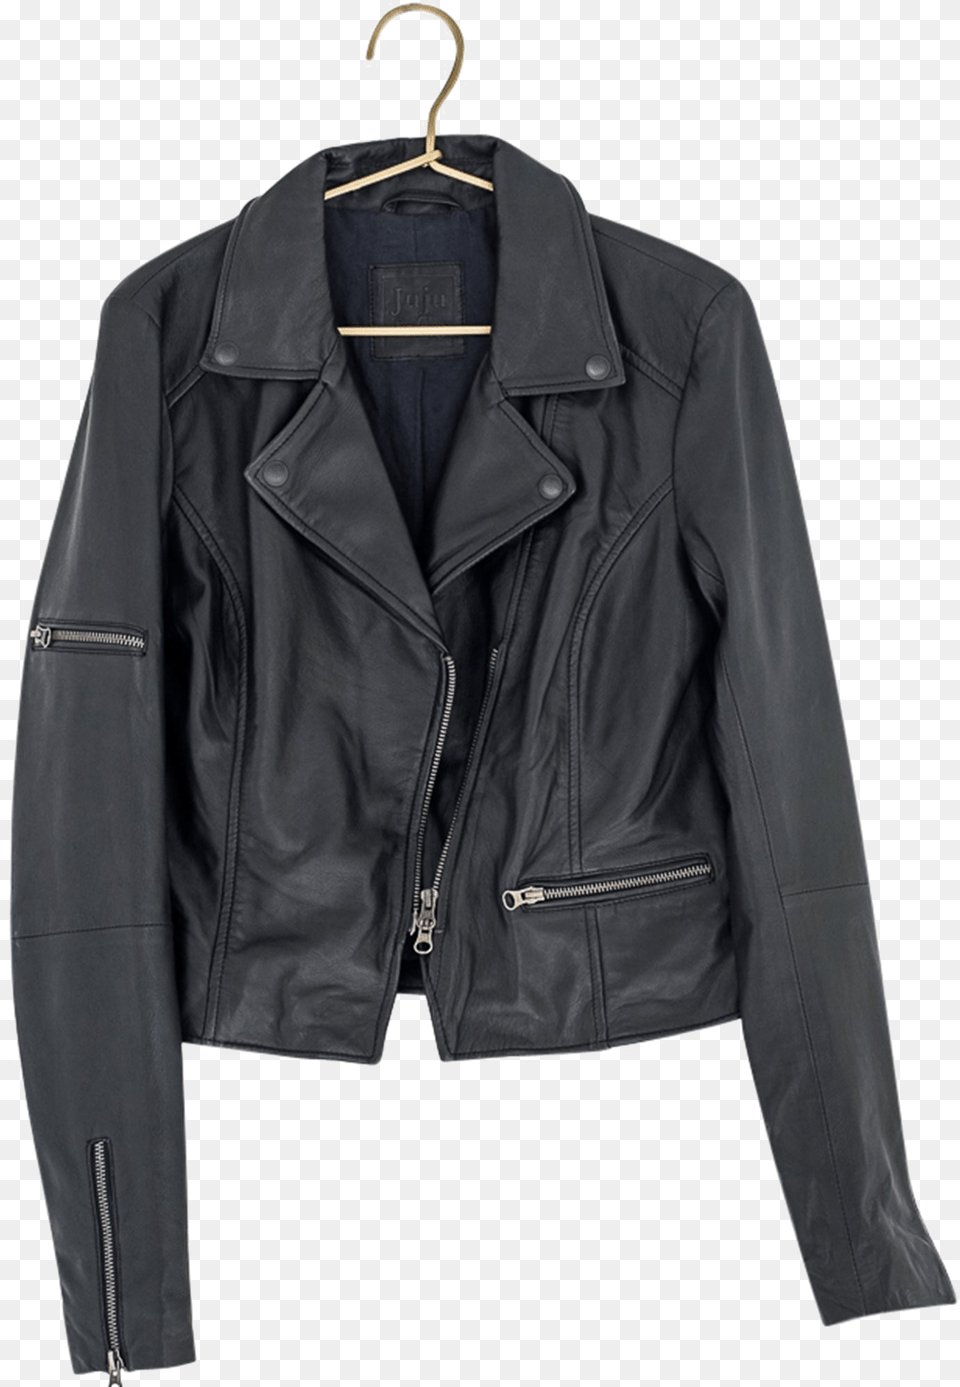 Leather Jacket Photo Ladies Black Suede Jackets, Clothing, Coat, Leather Jacket, Blazer Free Png